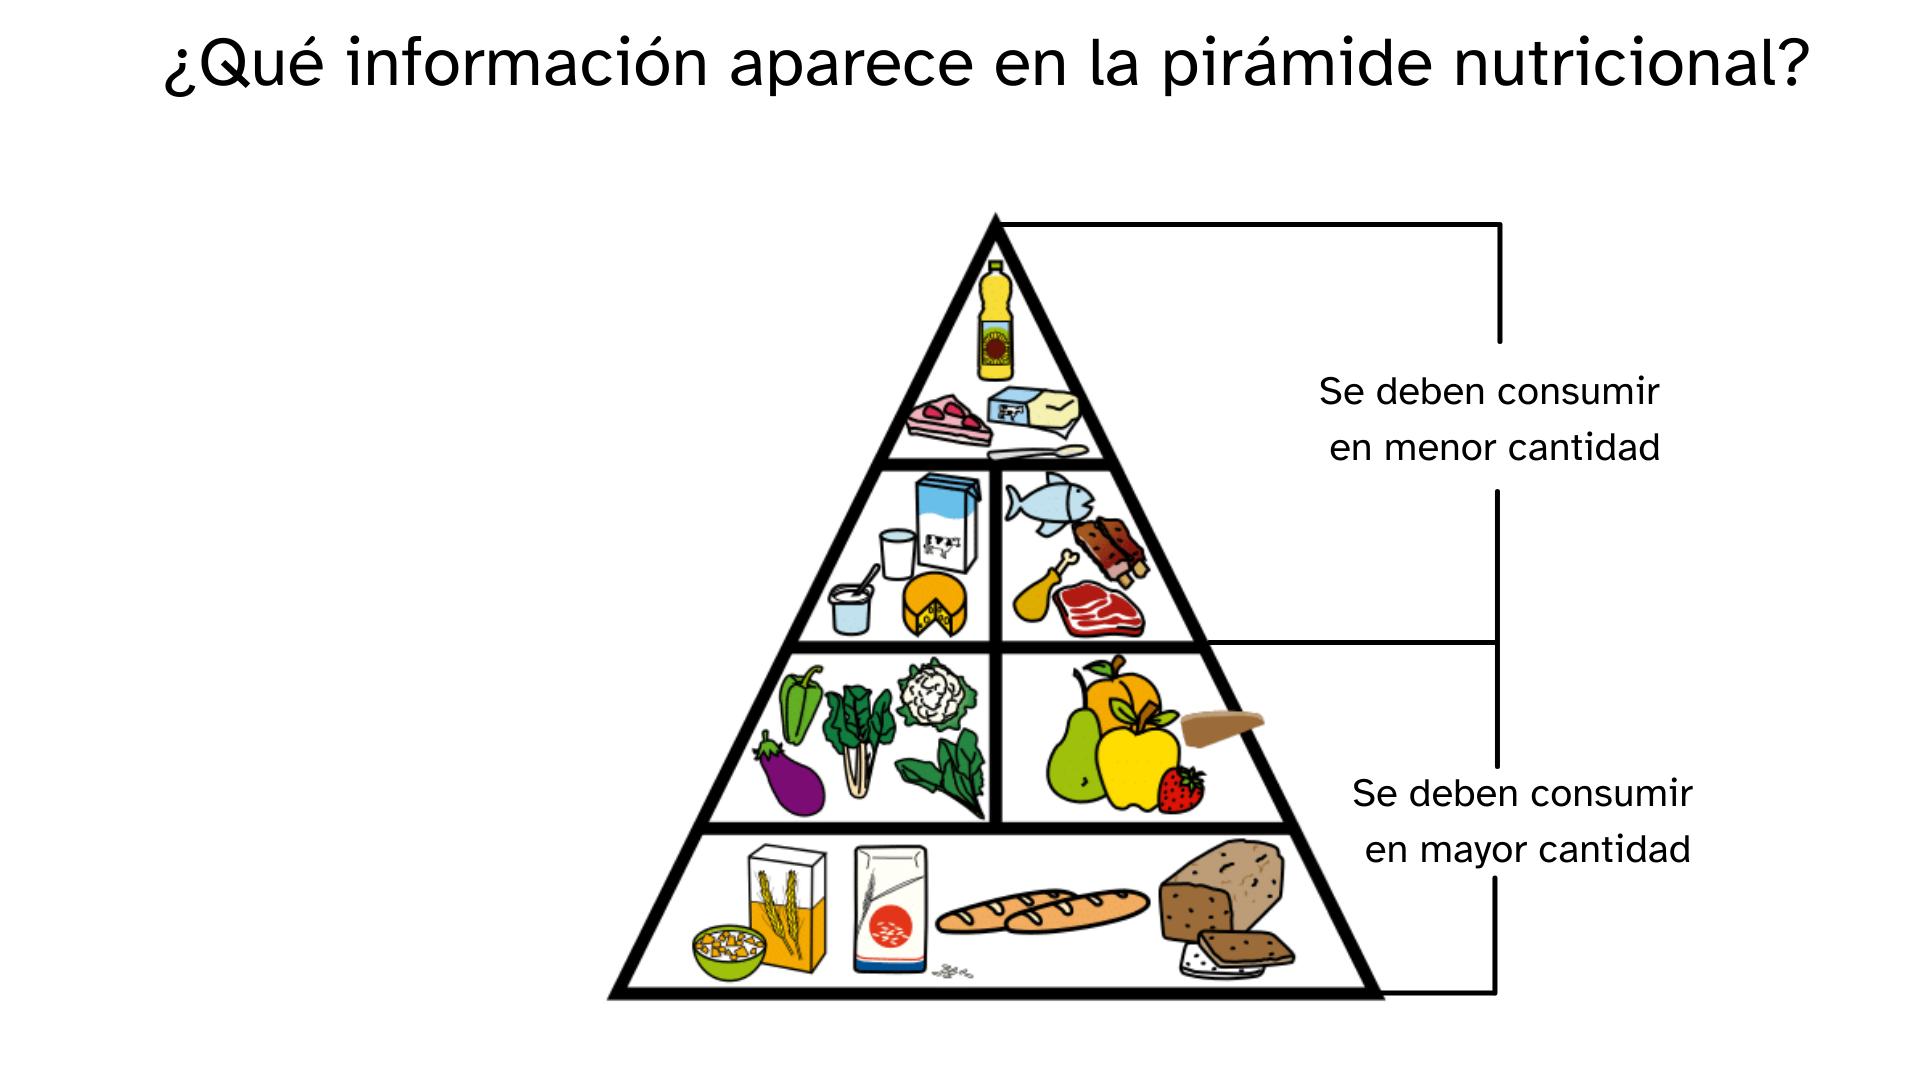 Infografía que muestra información sobre la pirámide nutricional